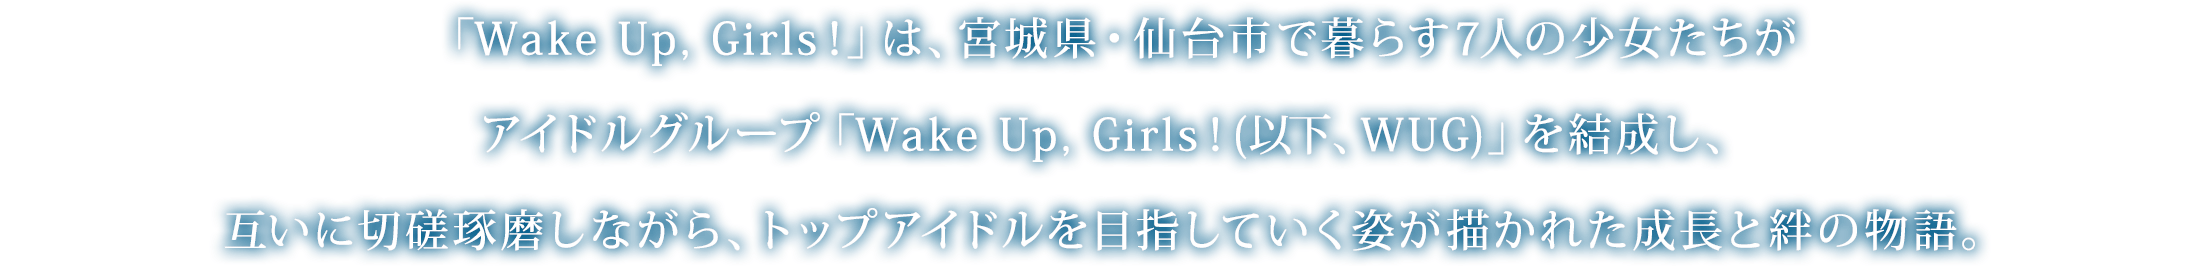 「Wake Up, Girls！」は、宮城県・仙台市で暮らす7人の少女たちがアイドルグループ「Wake Up, Girls！(以下、WUG)」を結成し、互いに切磋琢磨しながら、トップアイドルを目指していく姿が描かれた成長と絆の物語。